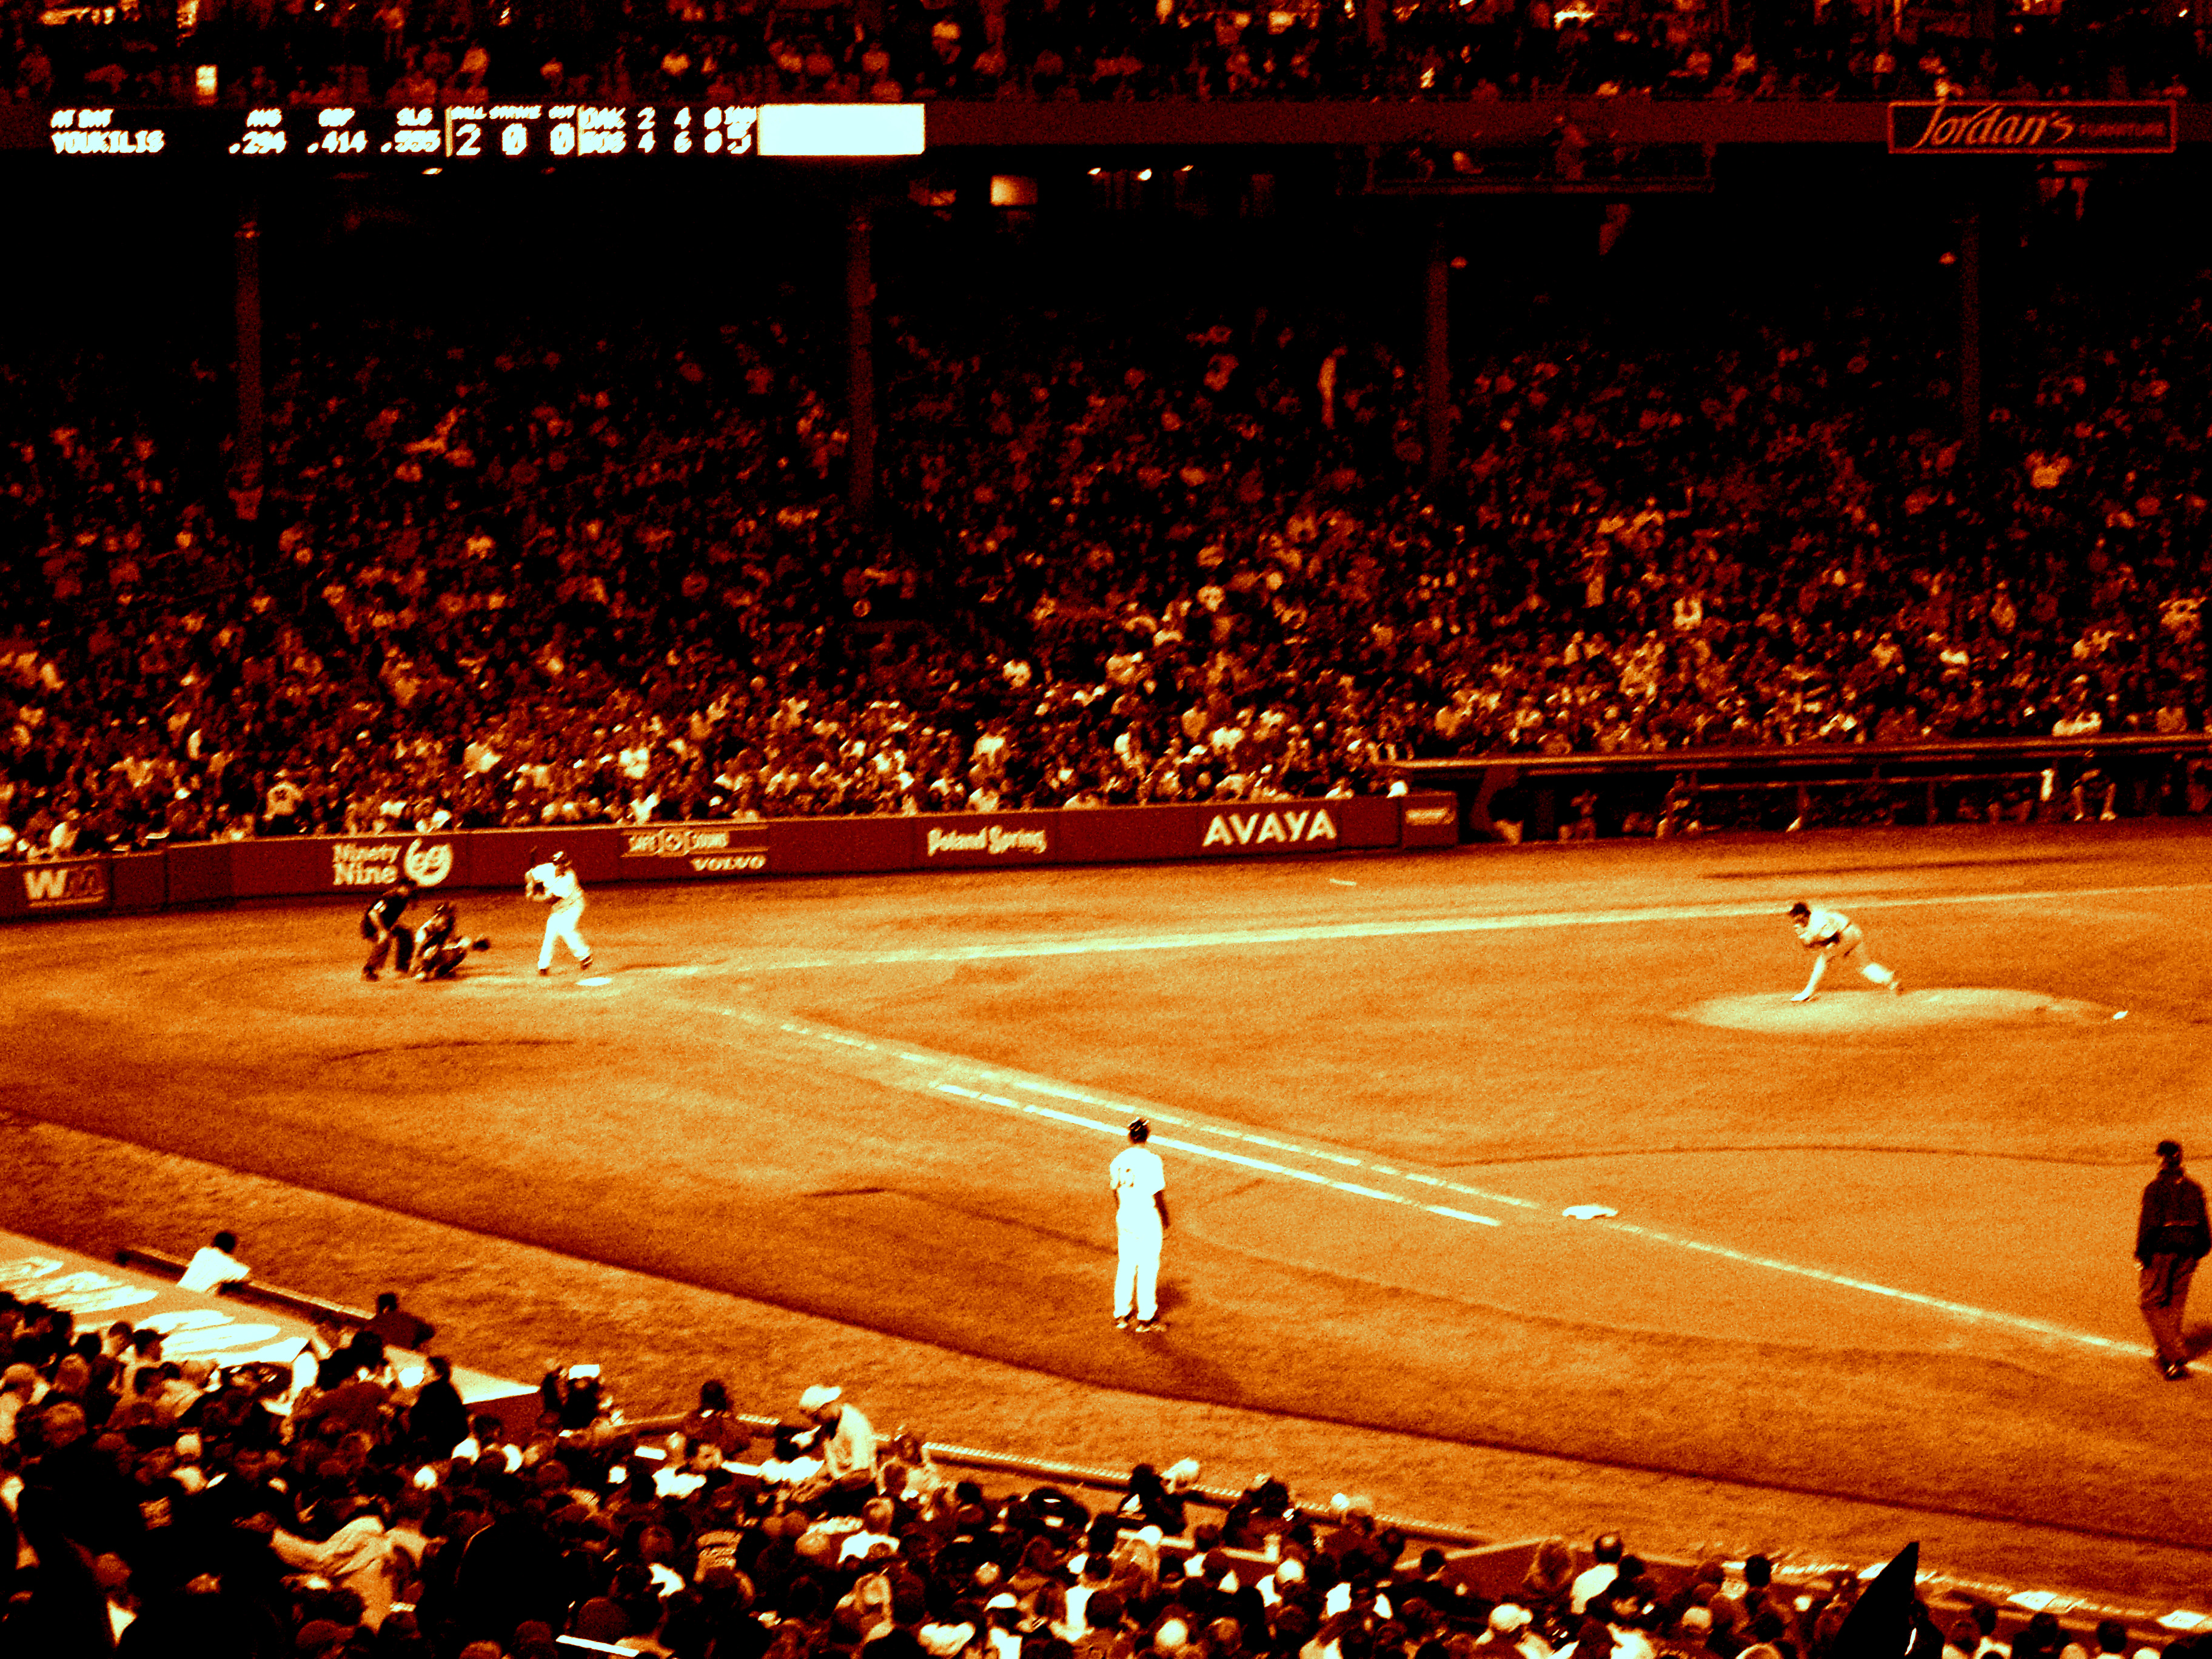 Fenway baseball game photo